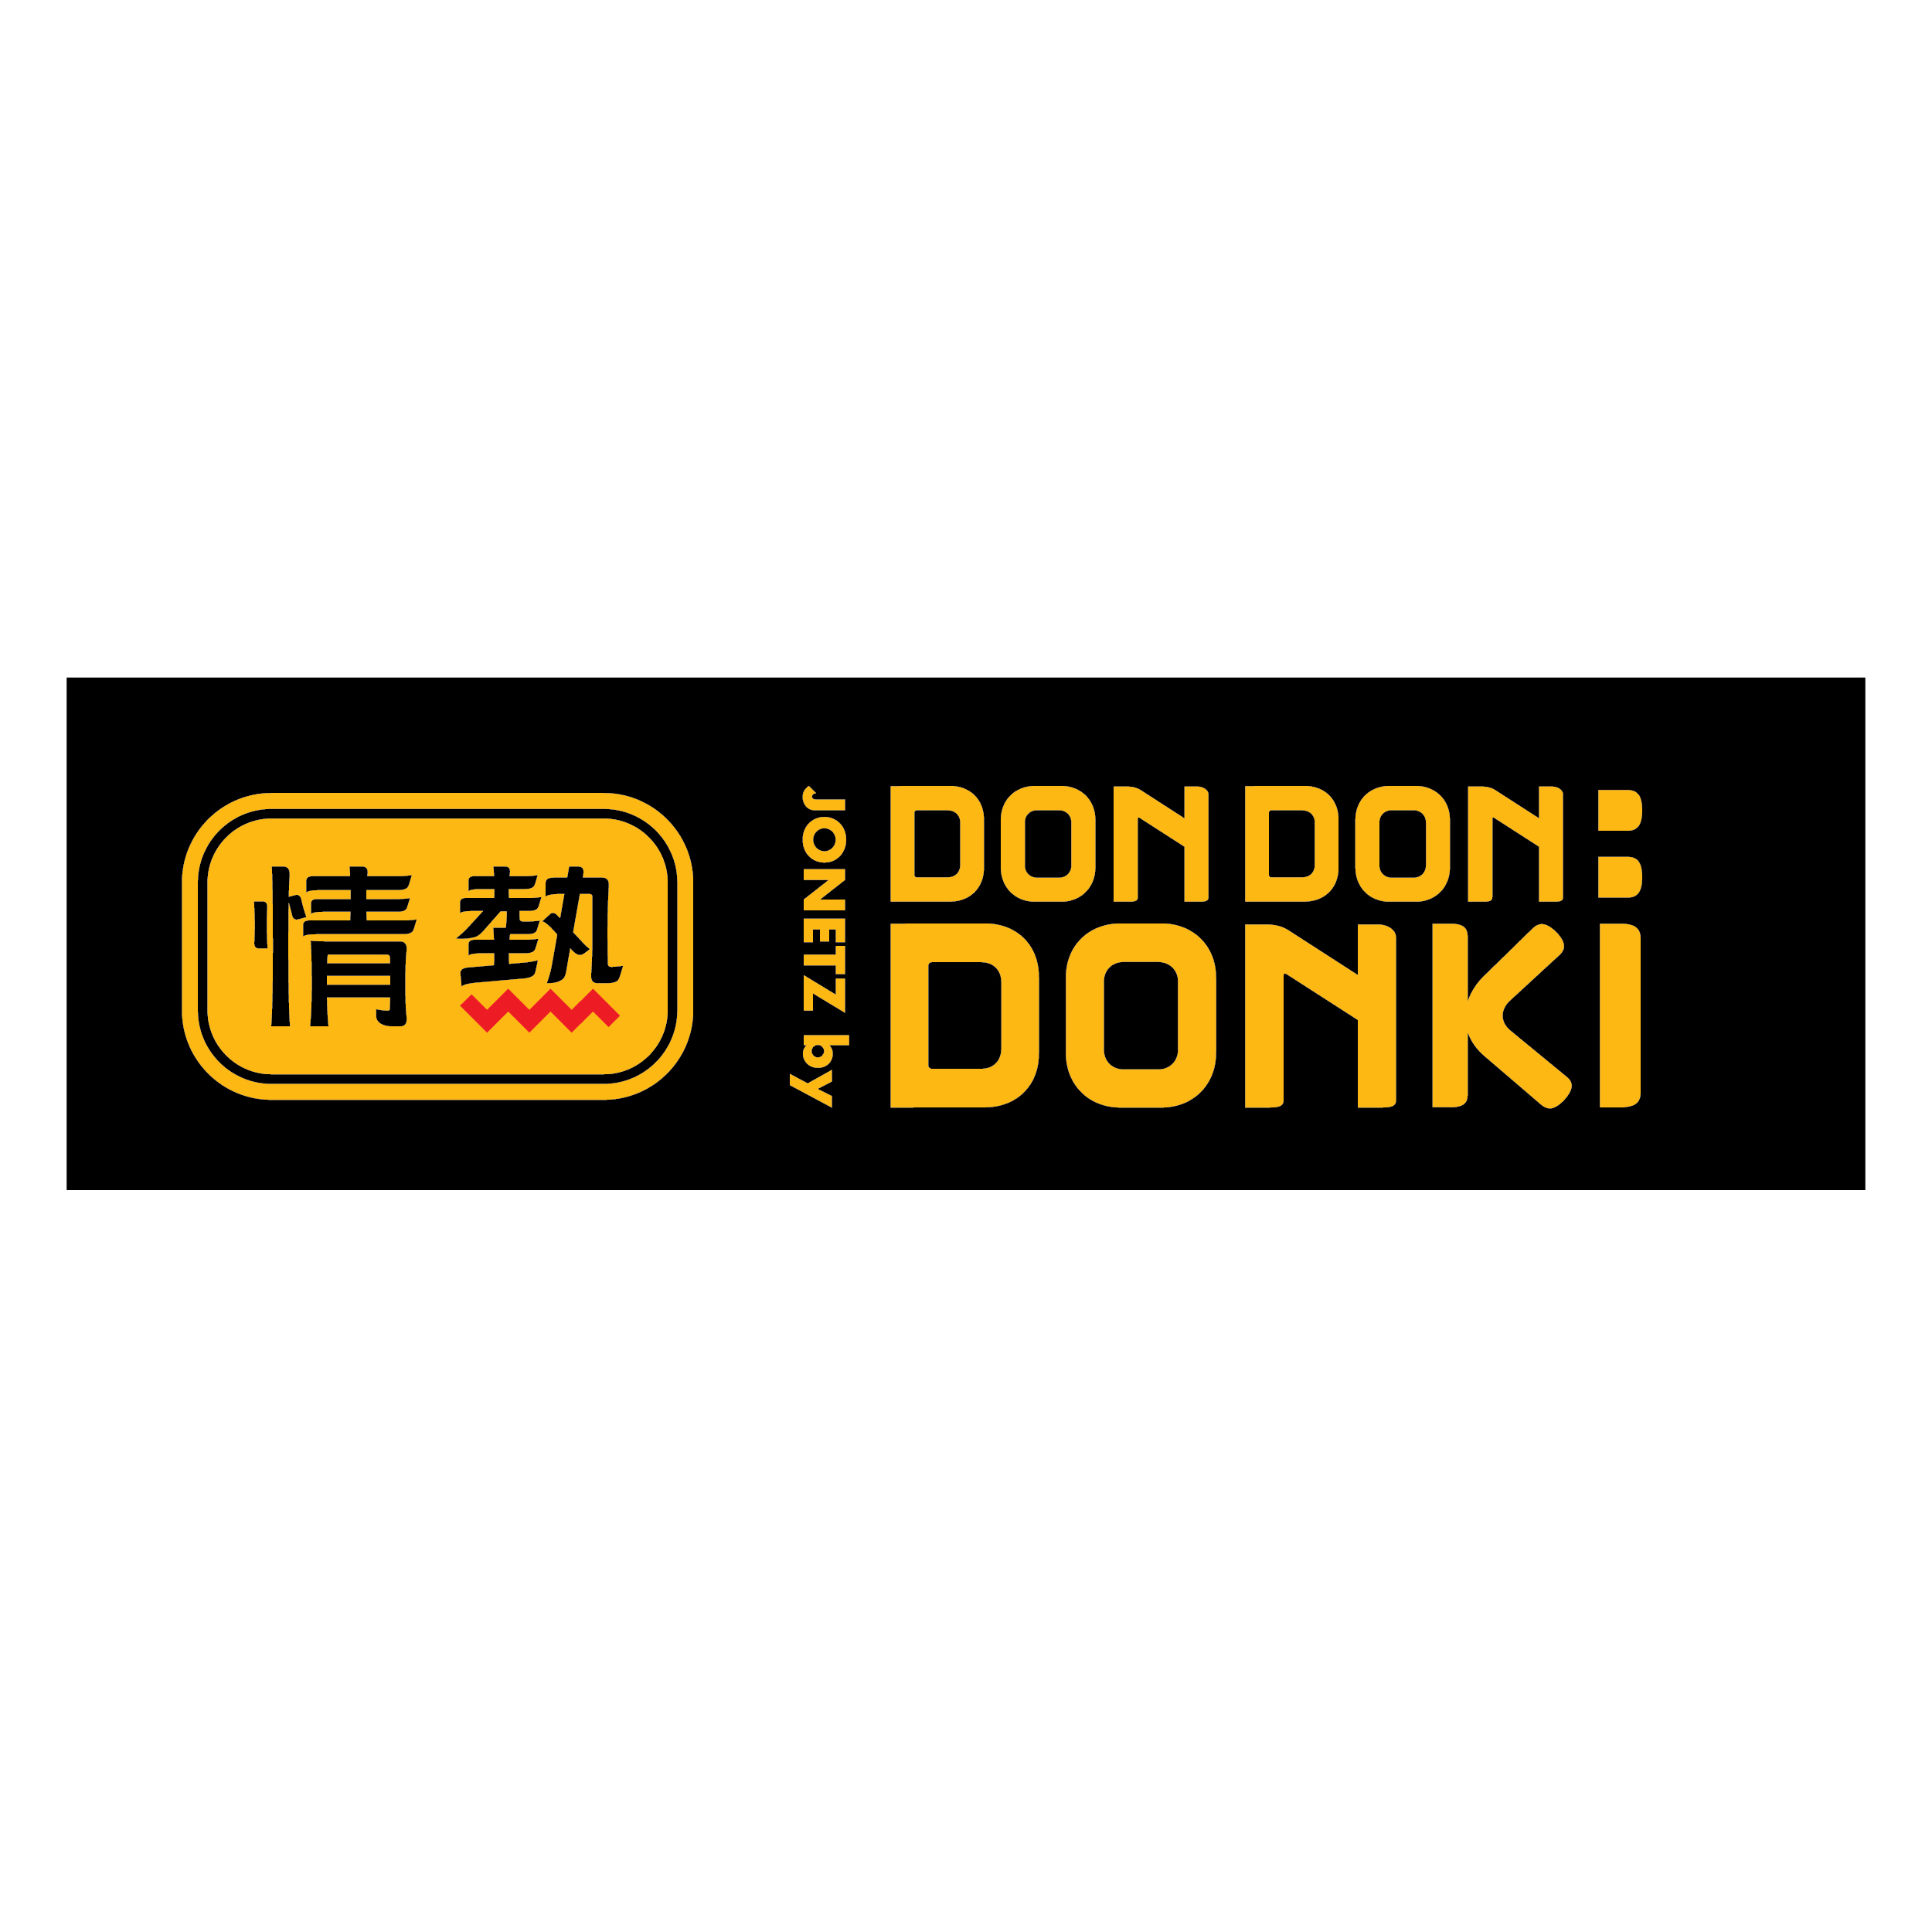 Don don donki malaysia tropicana